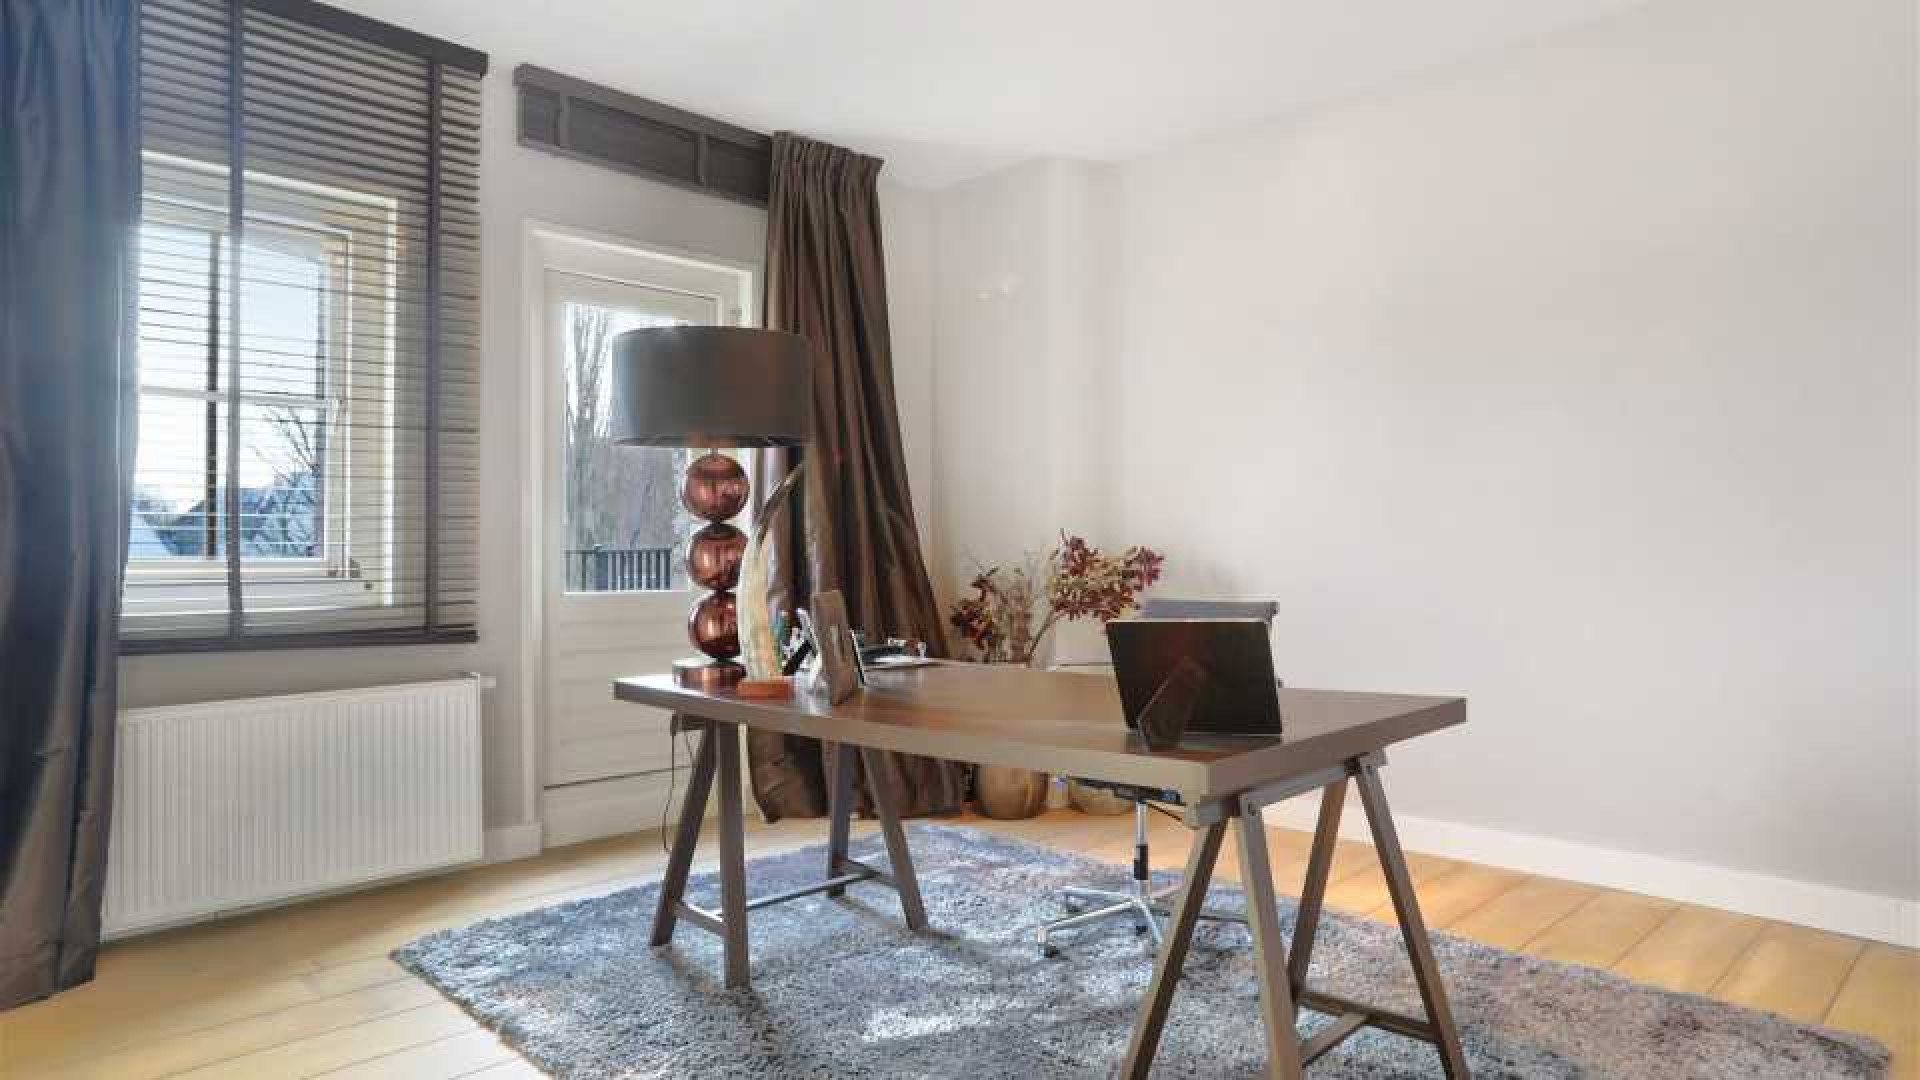 DJ Tiesto verlaagt huur van zijn luxe dubbele bovenhuis in Amsterdam. 12